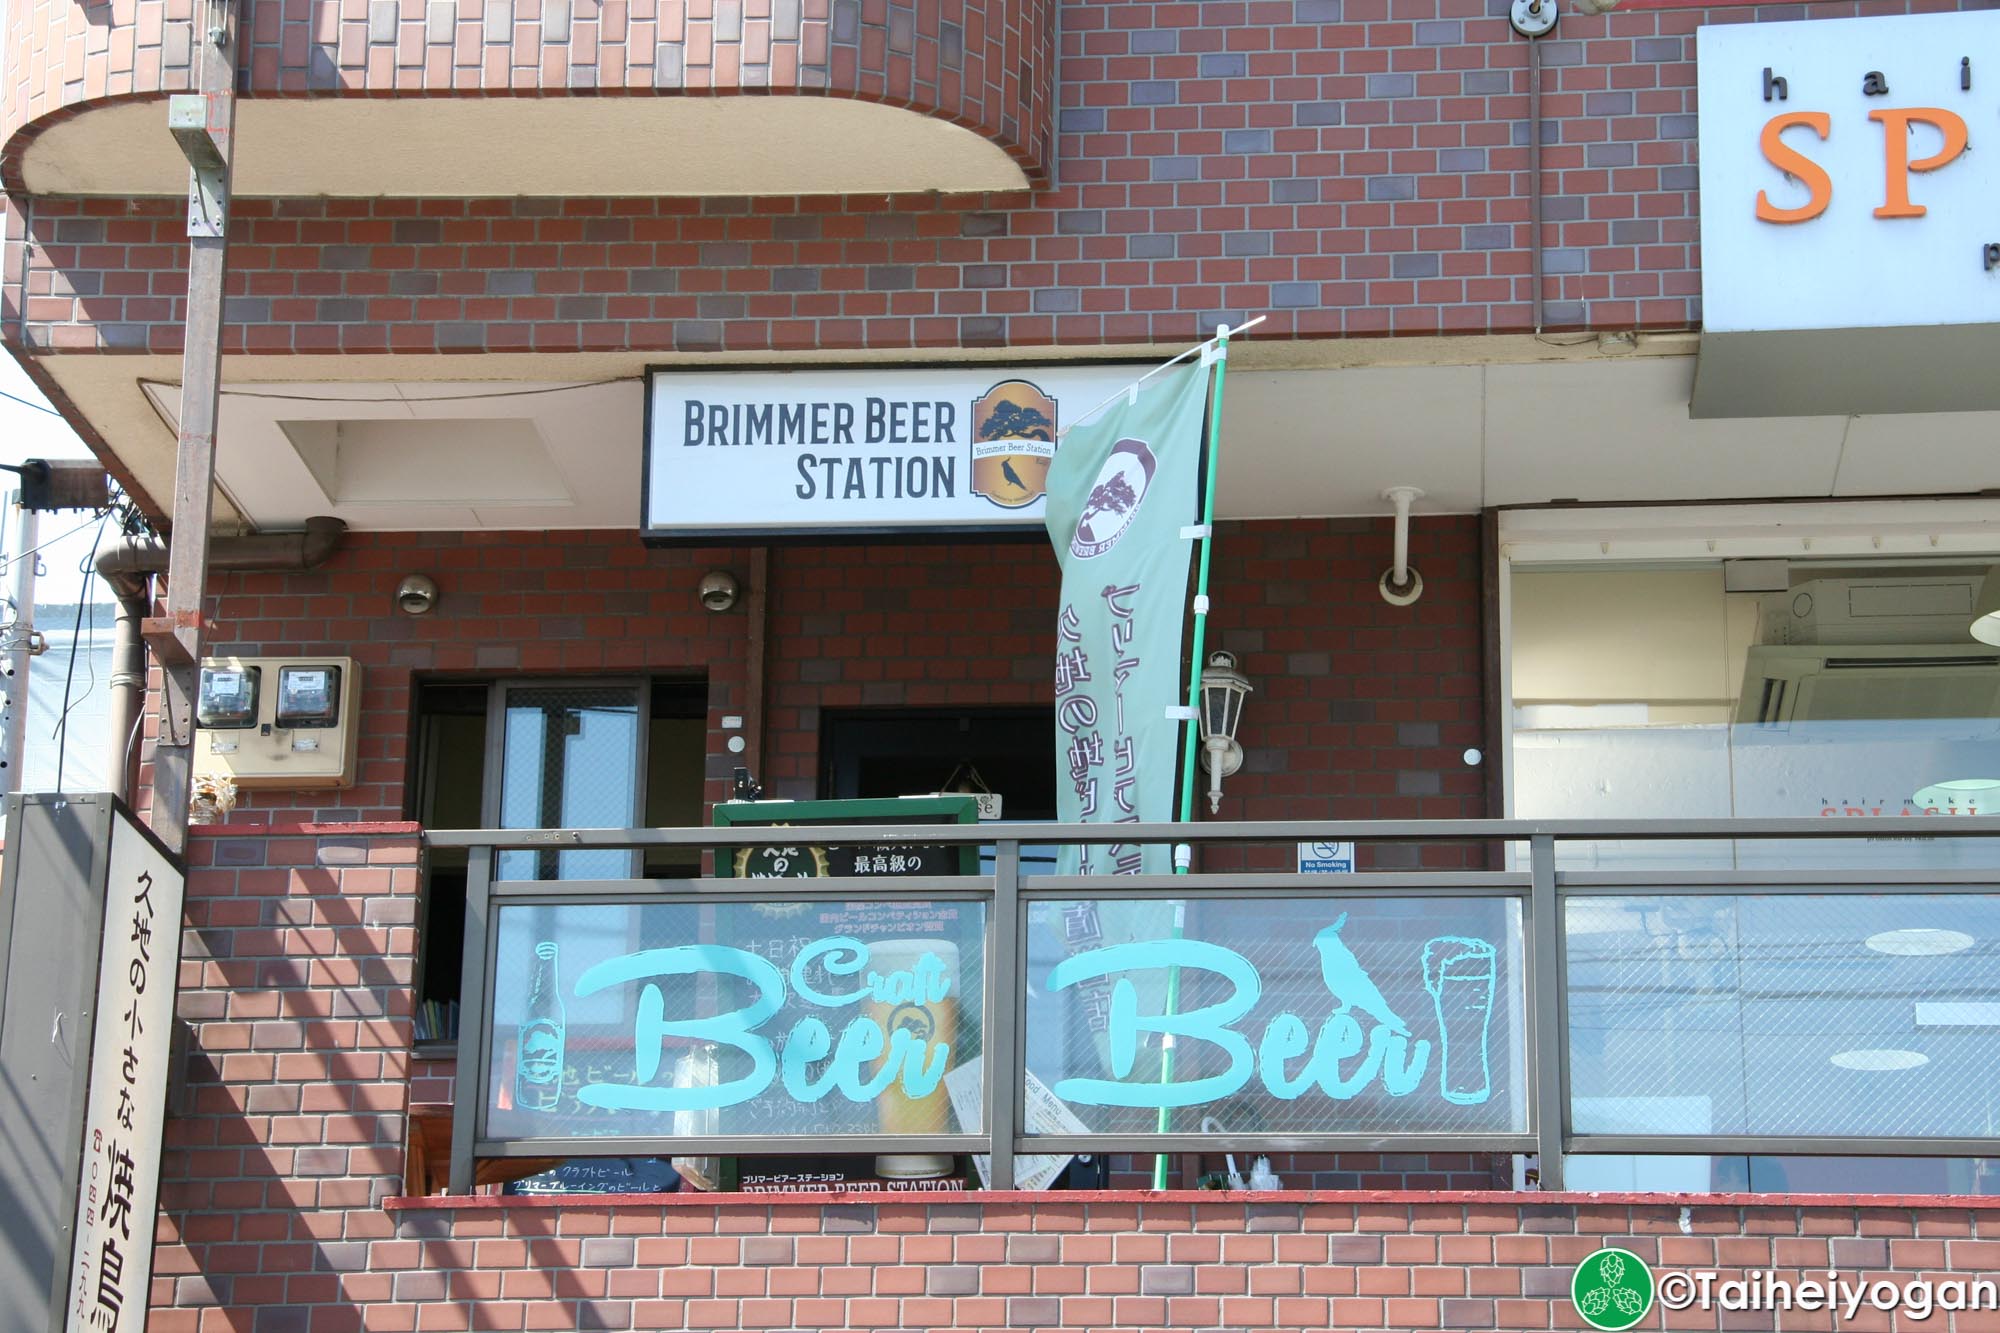 Brimmer Beer Station - Entrance